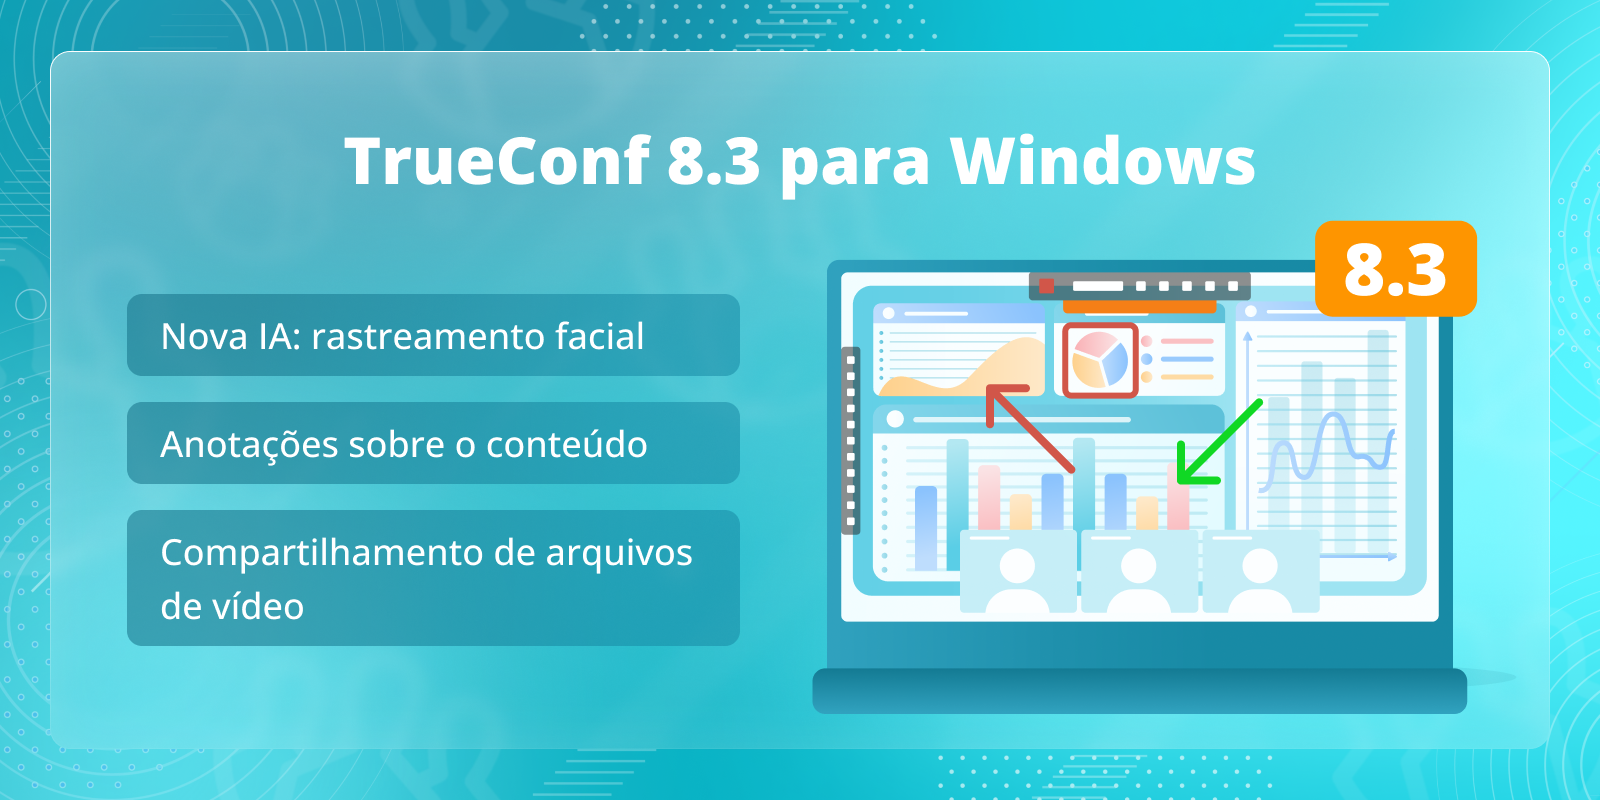 TrueConf 8.3 para Windows: Novo recurso baseado em IA, anotações sobre o conteúdo e compartilhamento de arquivos de vídeo 6